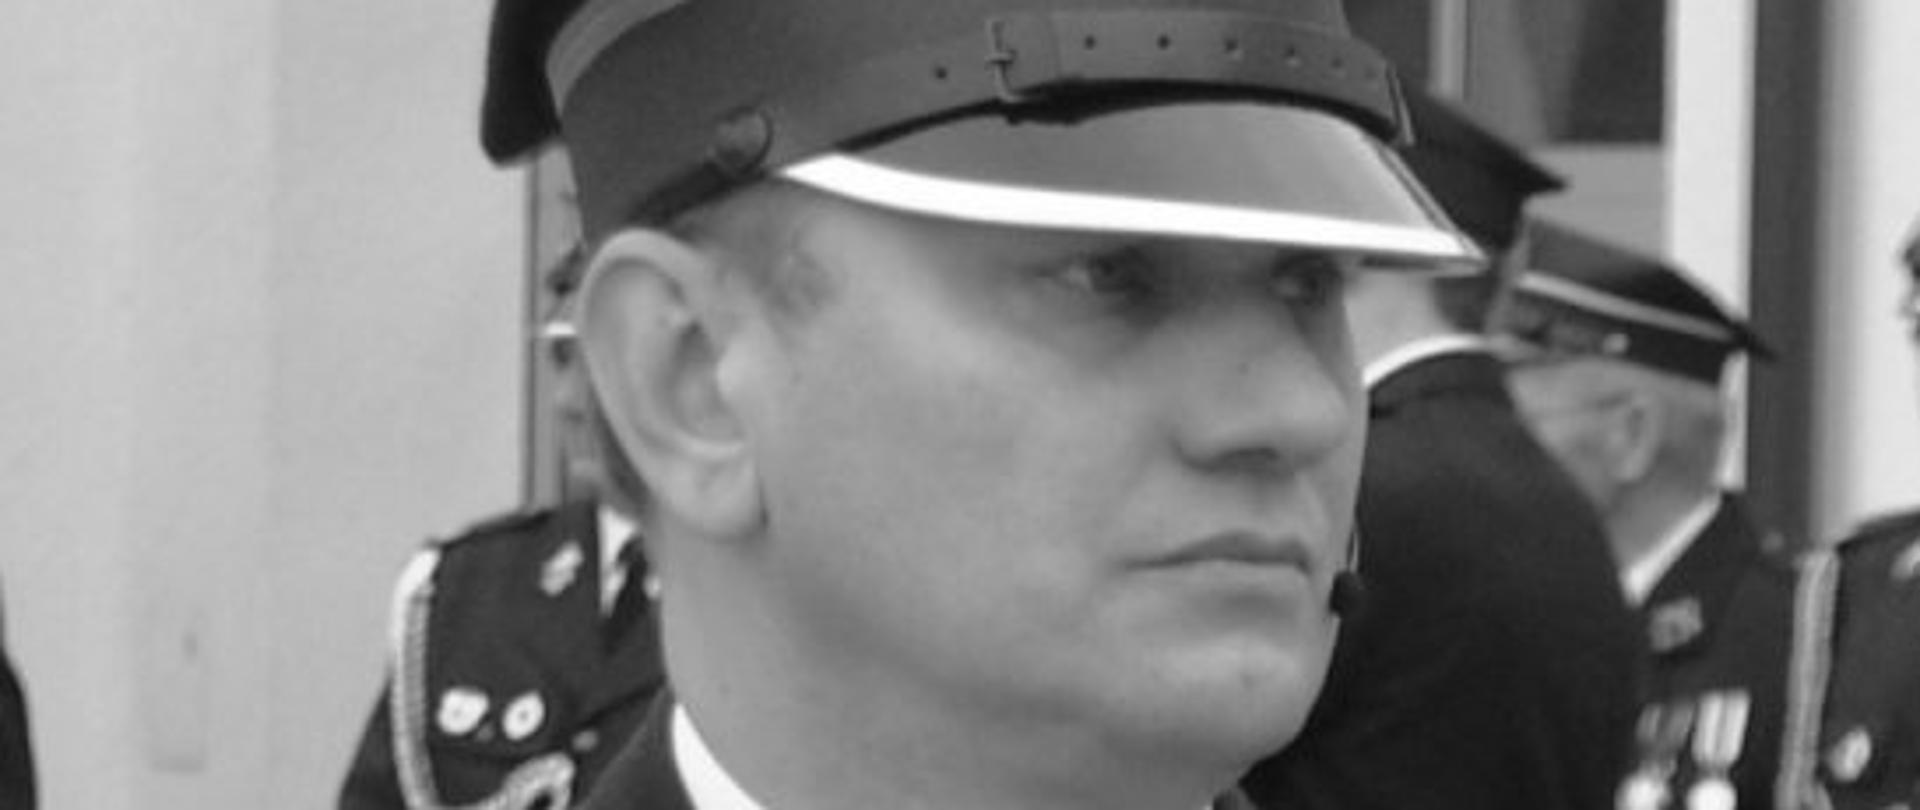 czarno-białe zdjęcie strażaka w okularach, w rogatywce, w mundurze w białej koszuli z krawatem
